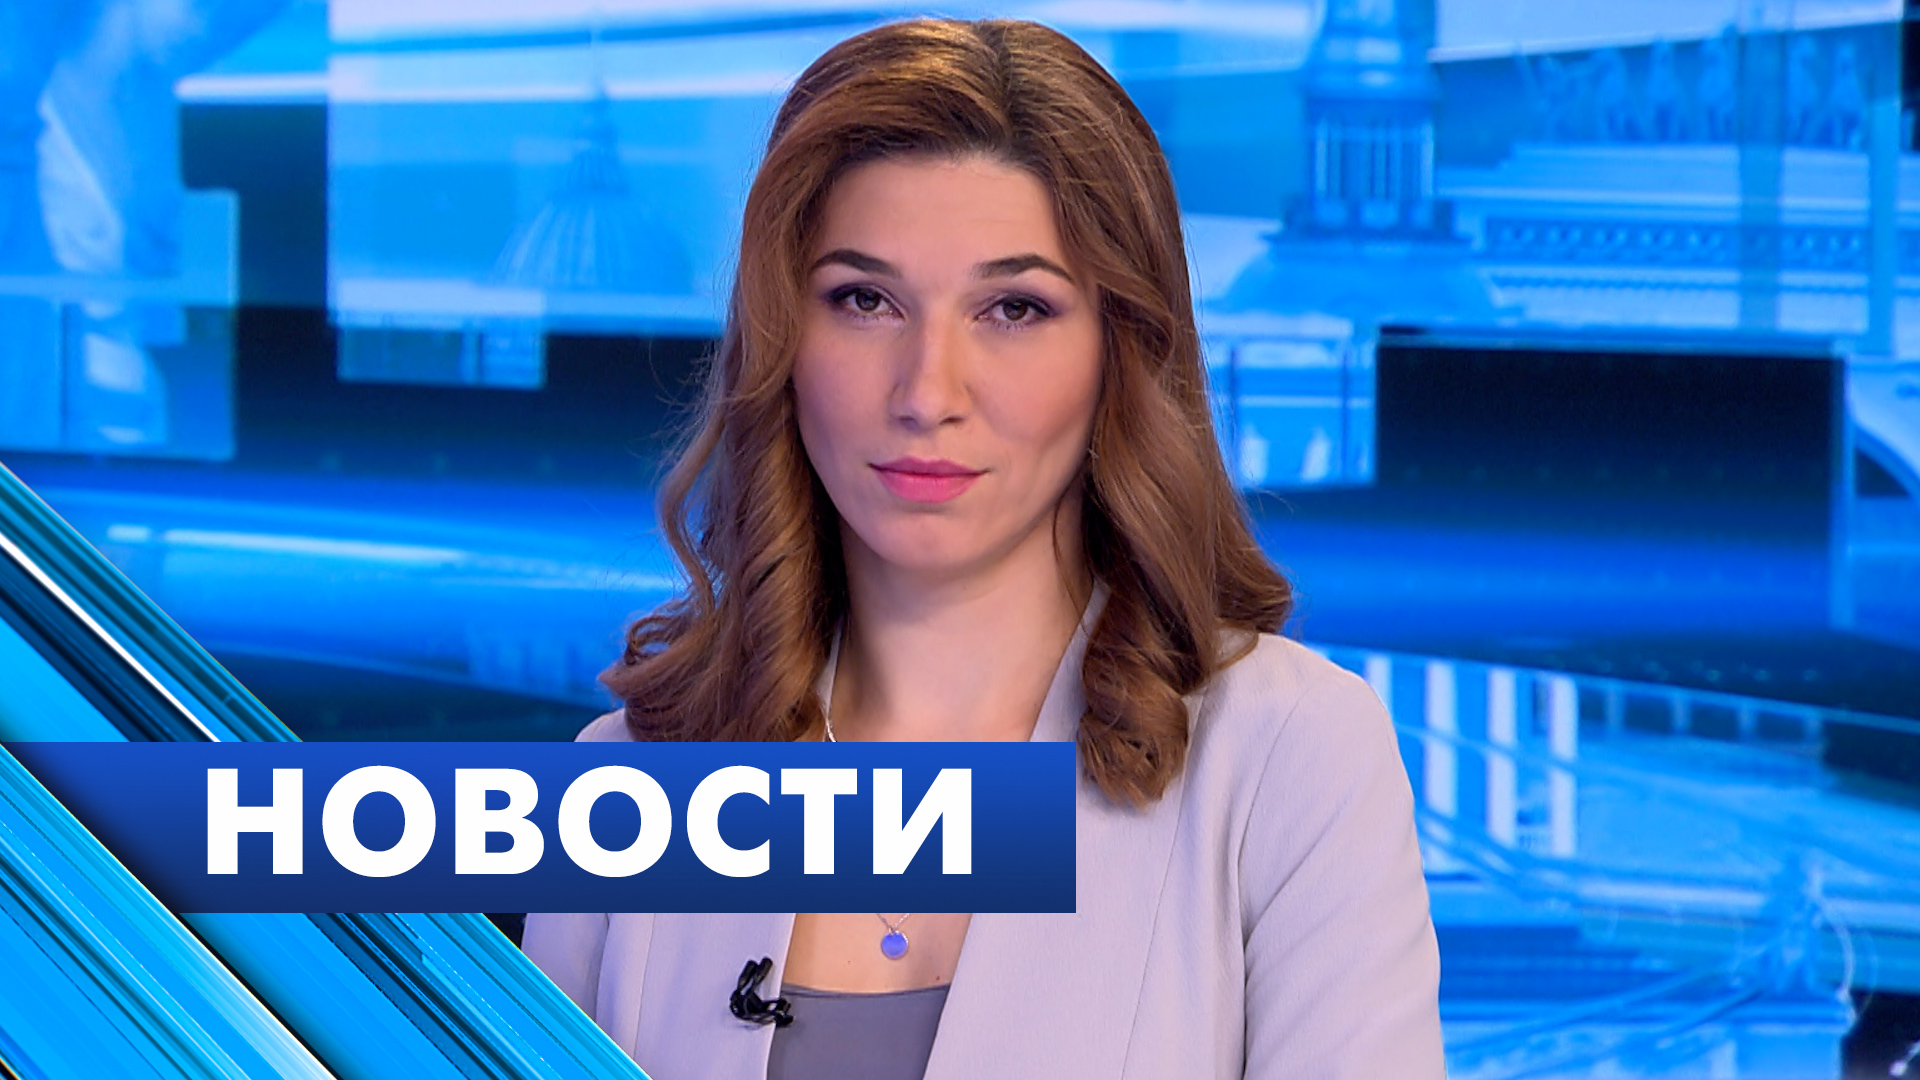 Главные новости Петербурга / 11 апреля